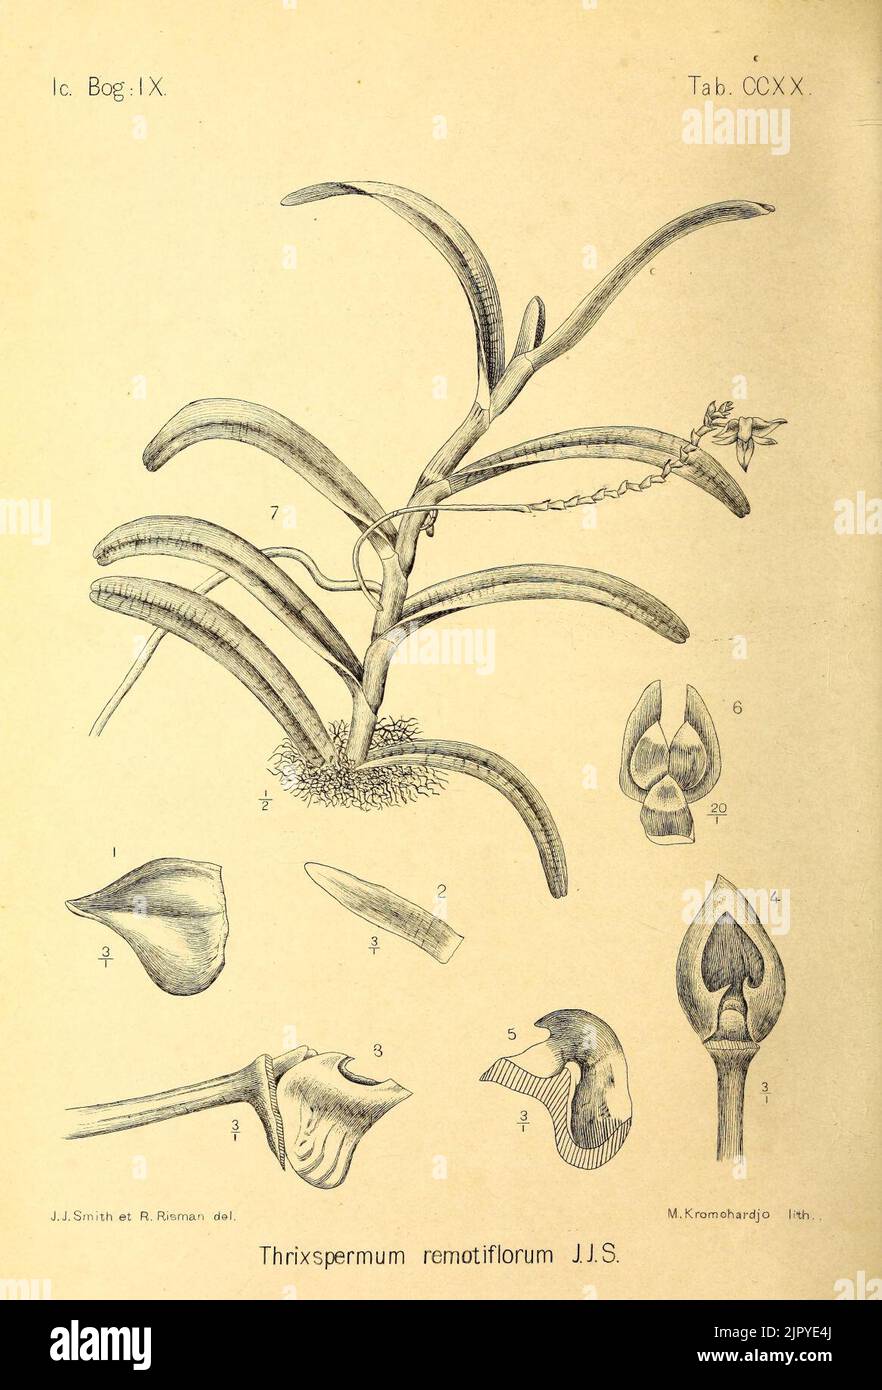 Thrixspermum remotiflorum Icones Bogorienses V3 Tab CCXX (1906) Stock Photo